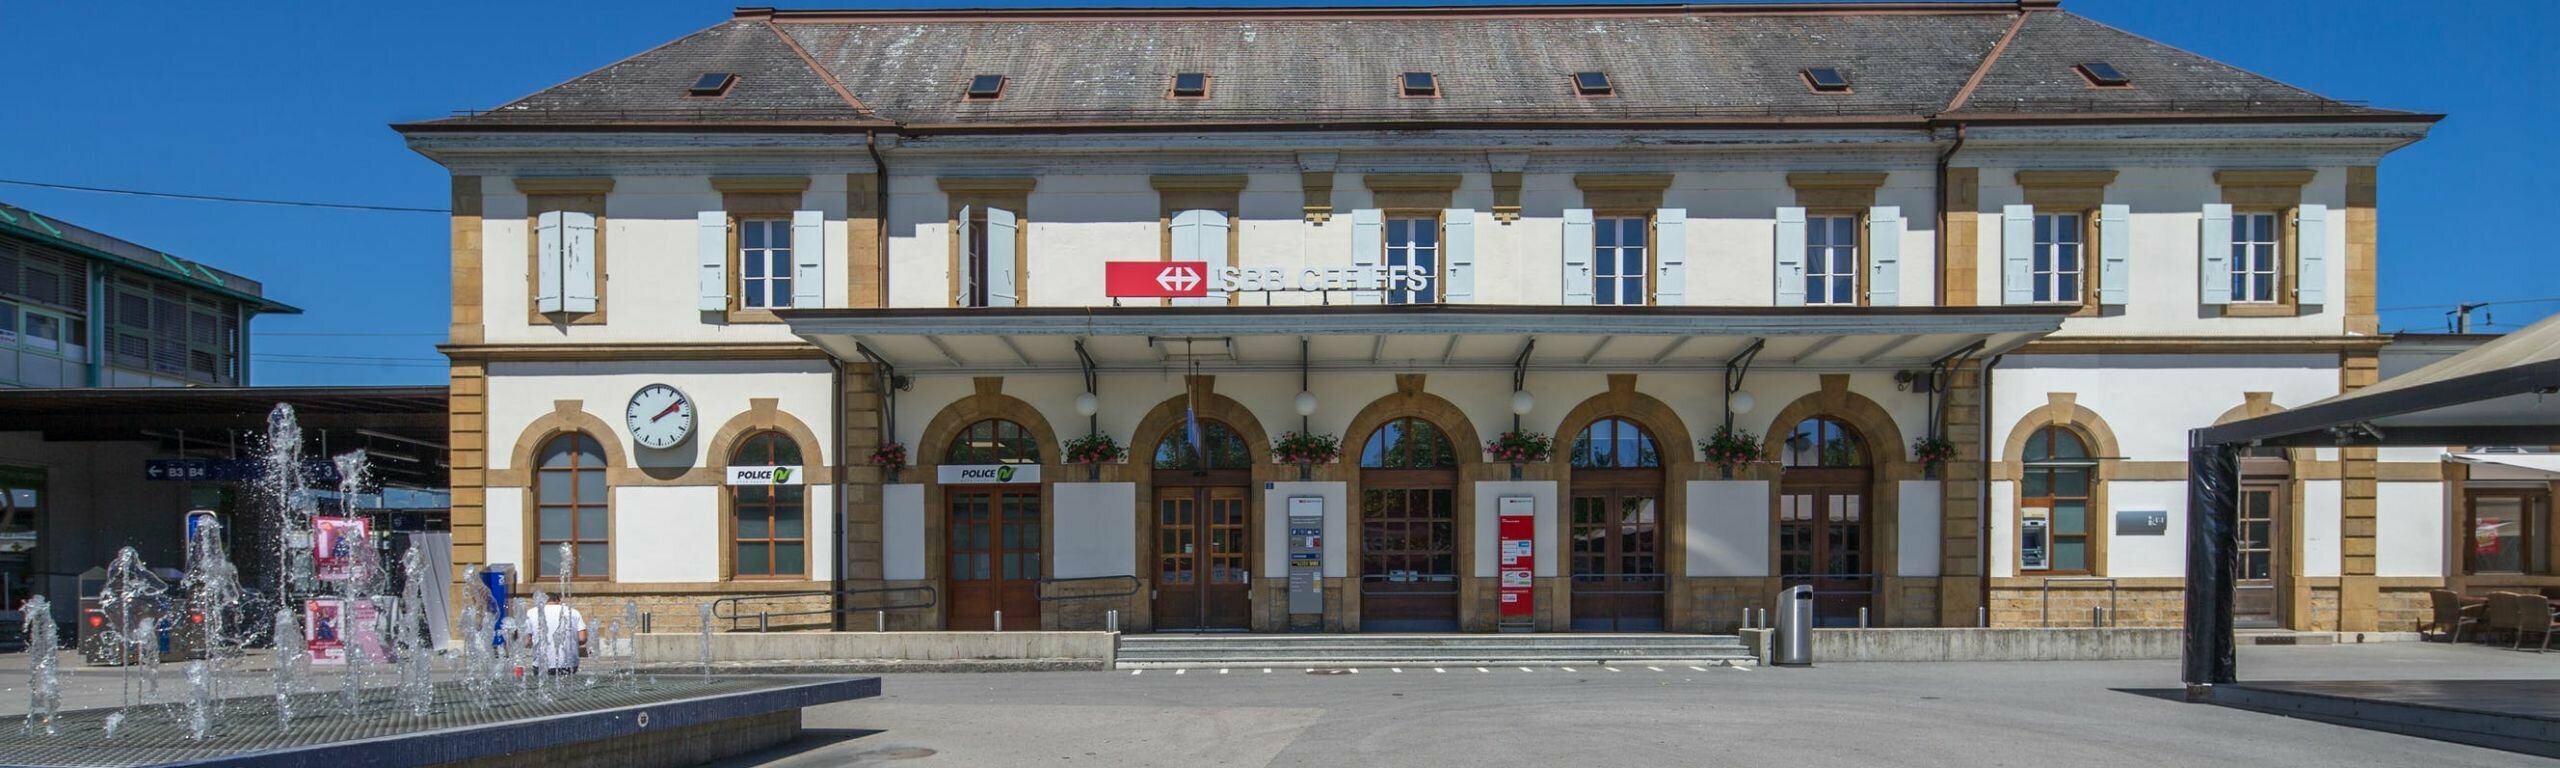 Der Bahnhof Yverdon-les-Bains wurde bereits 2016 fossilfrei umgerüstet